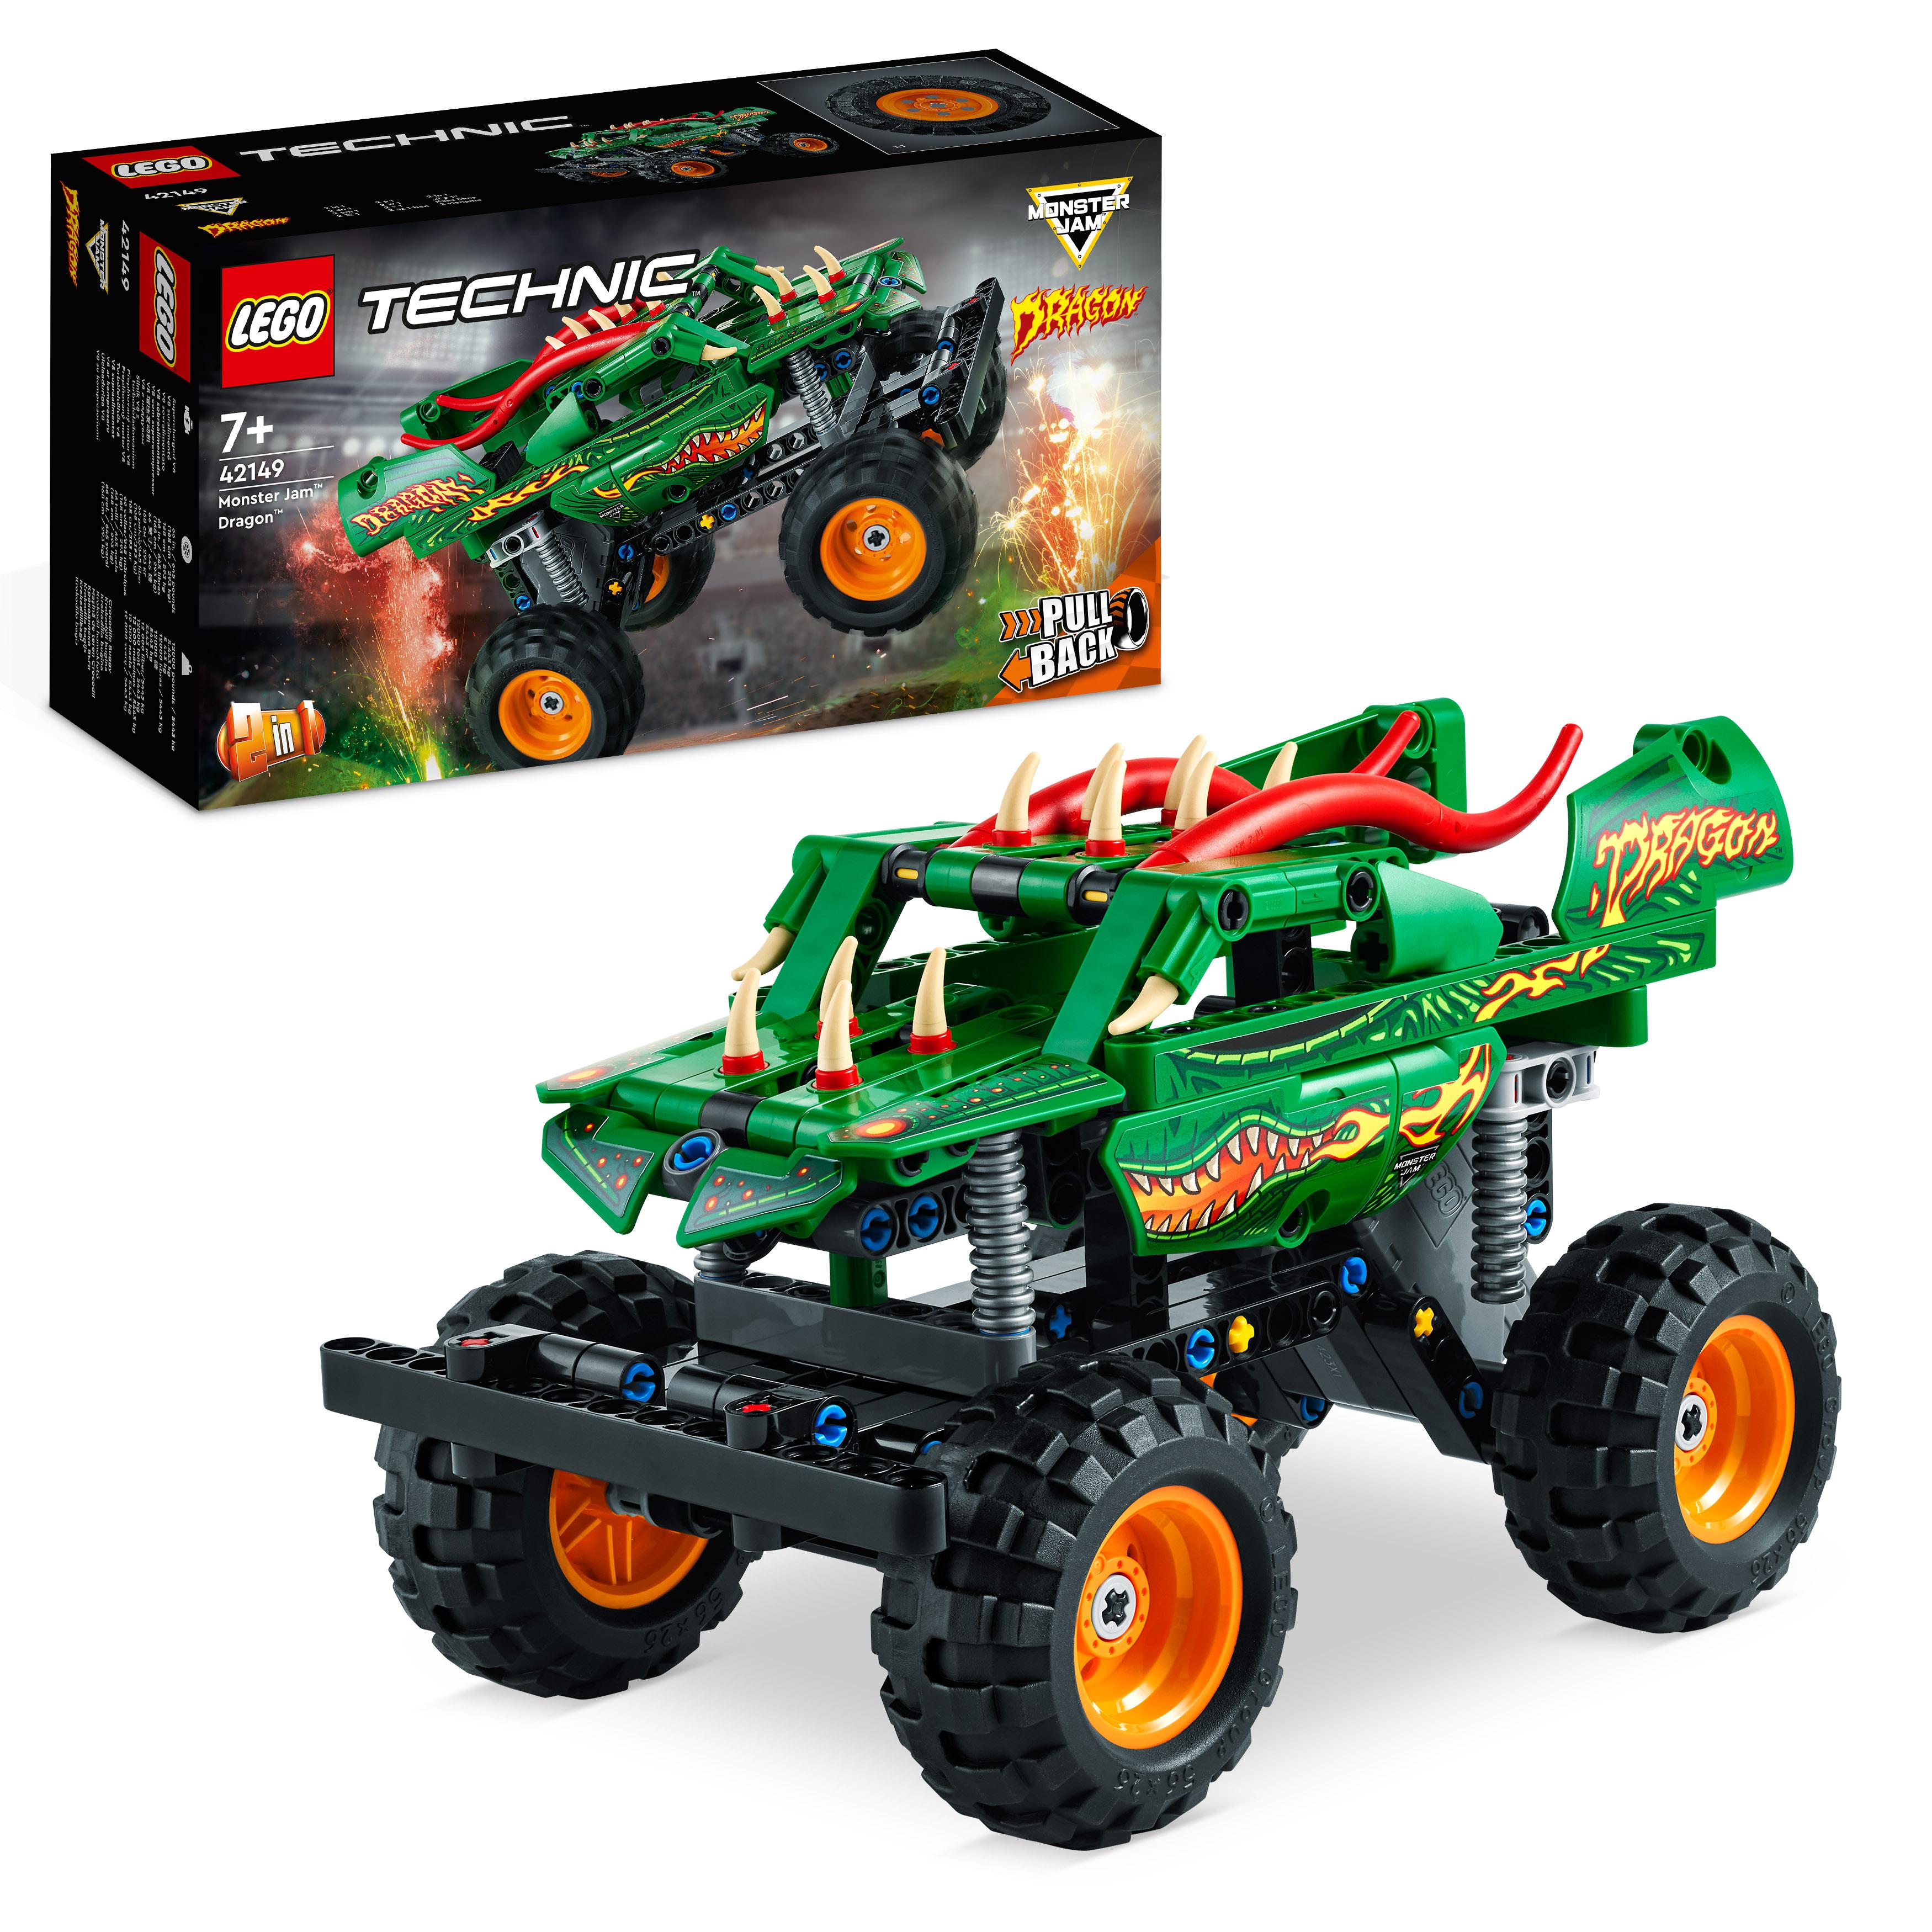 LEGO 42132 Technic Chopper Abenteuer-Bike, 2-in-1 Bausatz, Motorrad-Spielzeug,  kreatives Geschenk für Jungen und Mädchen ab 7 Jahren, Fahrzeug-Set:  : Spielzeug